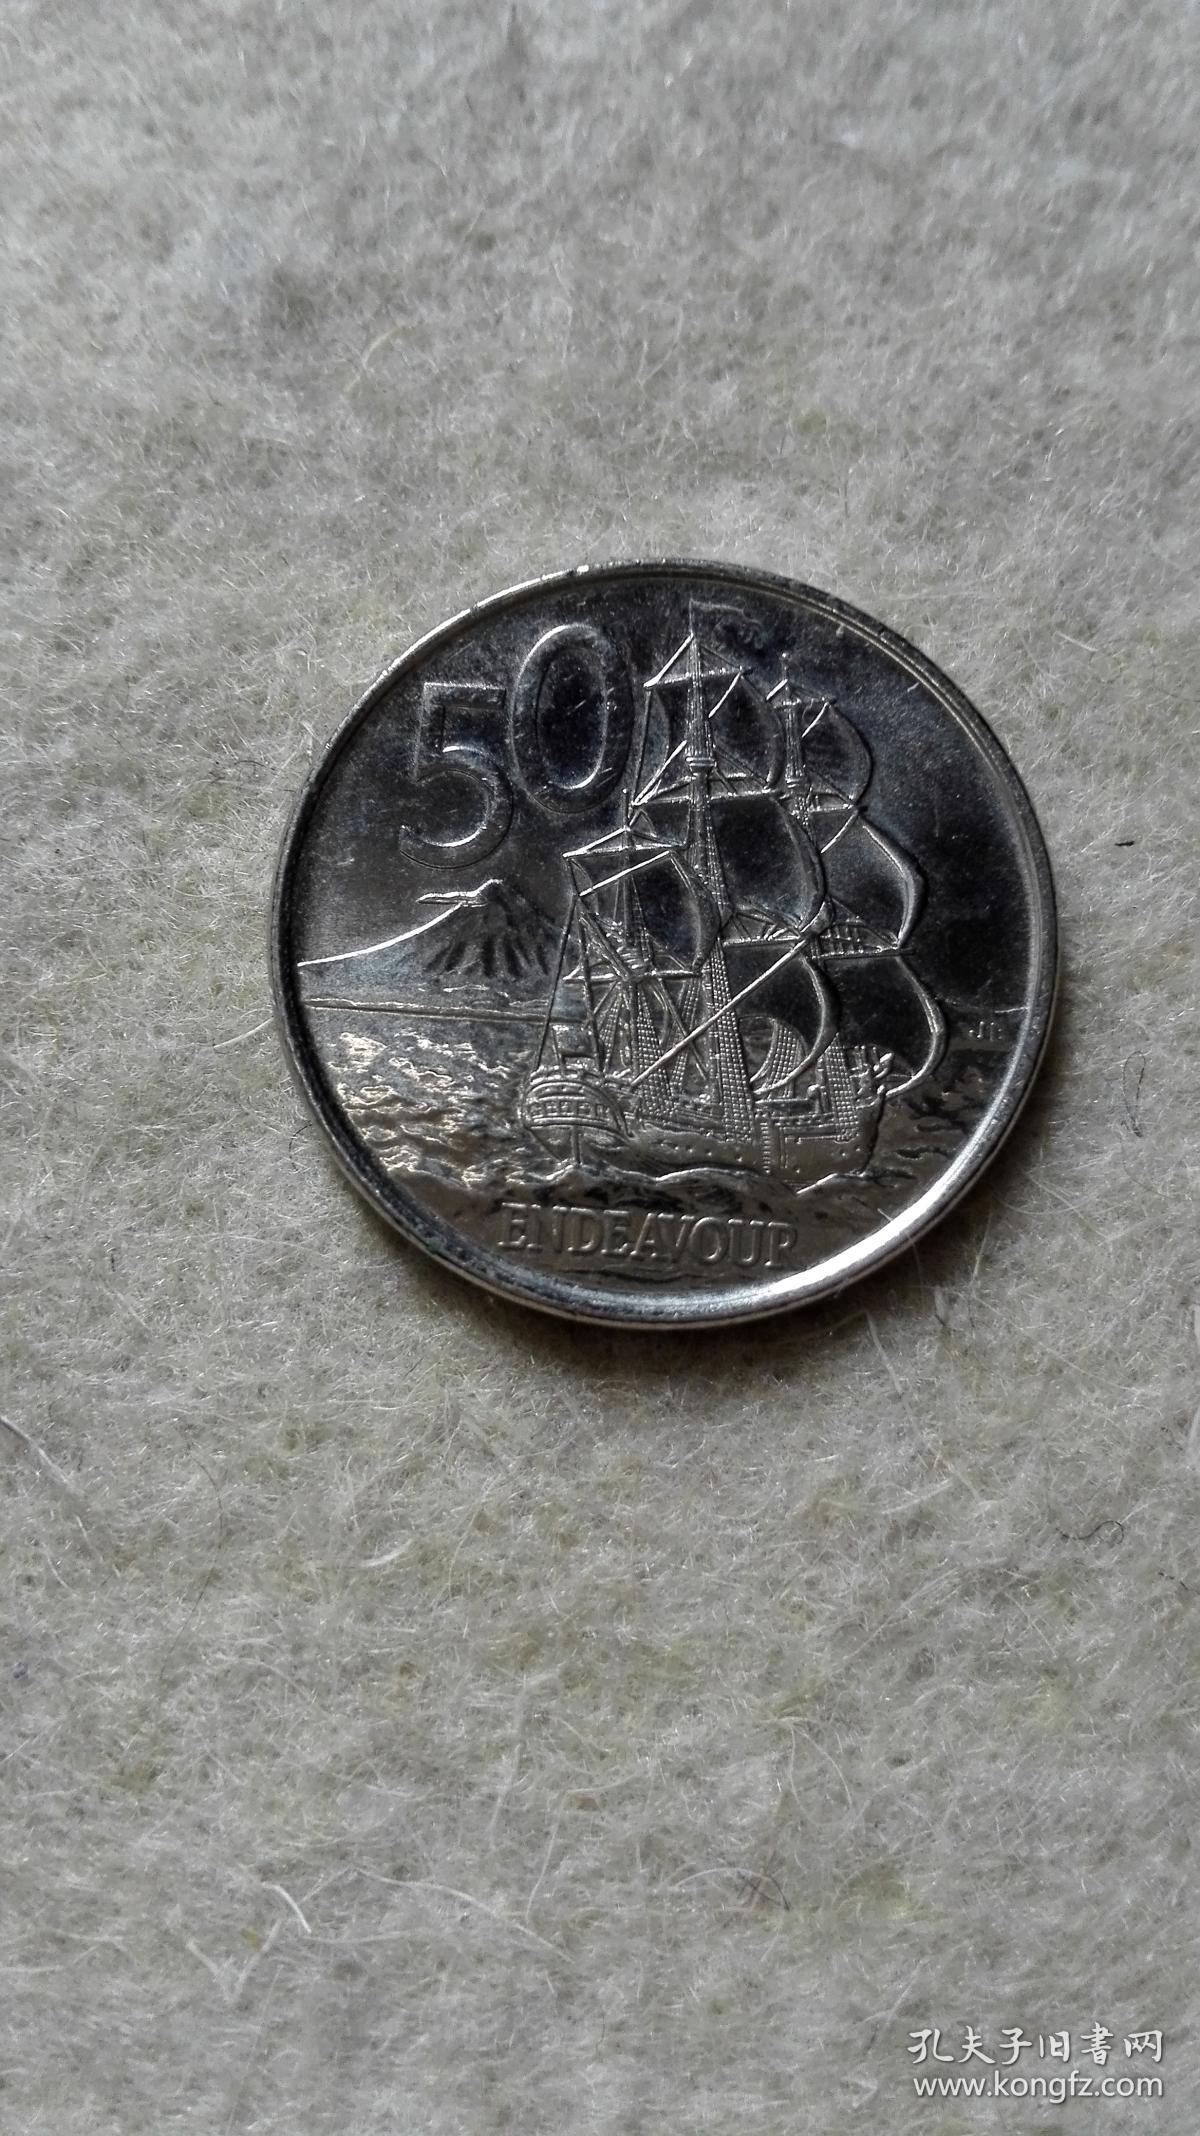 新西兰50分硬币 （2009）伊丽莎白女王老年头像硬币 大洋洲钱币 New Zealand Elizabeth II_孔夫子旧书网